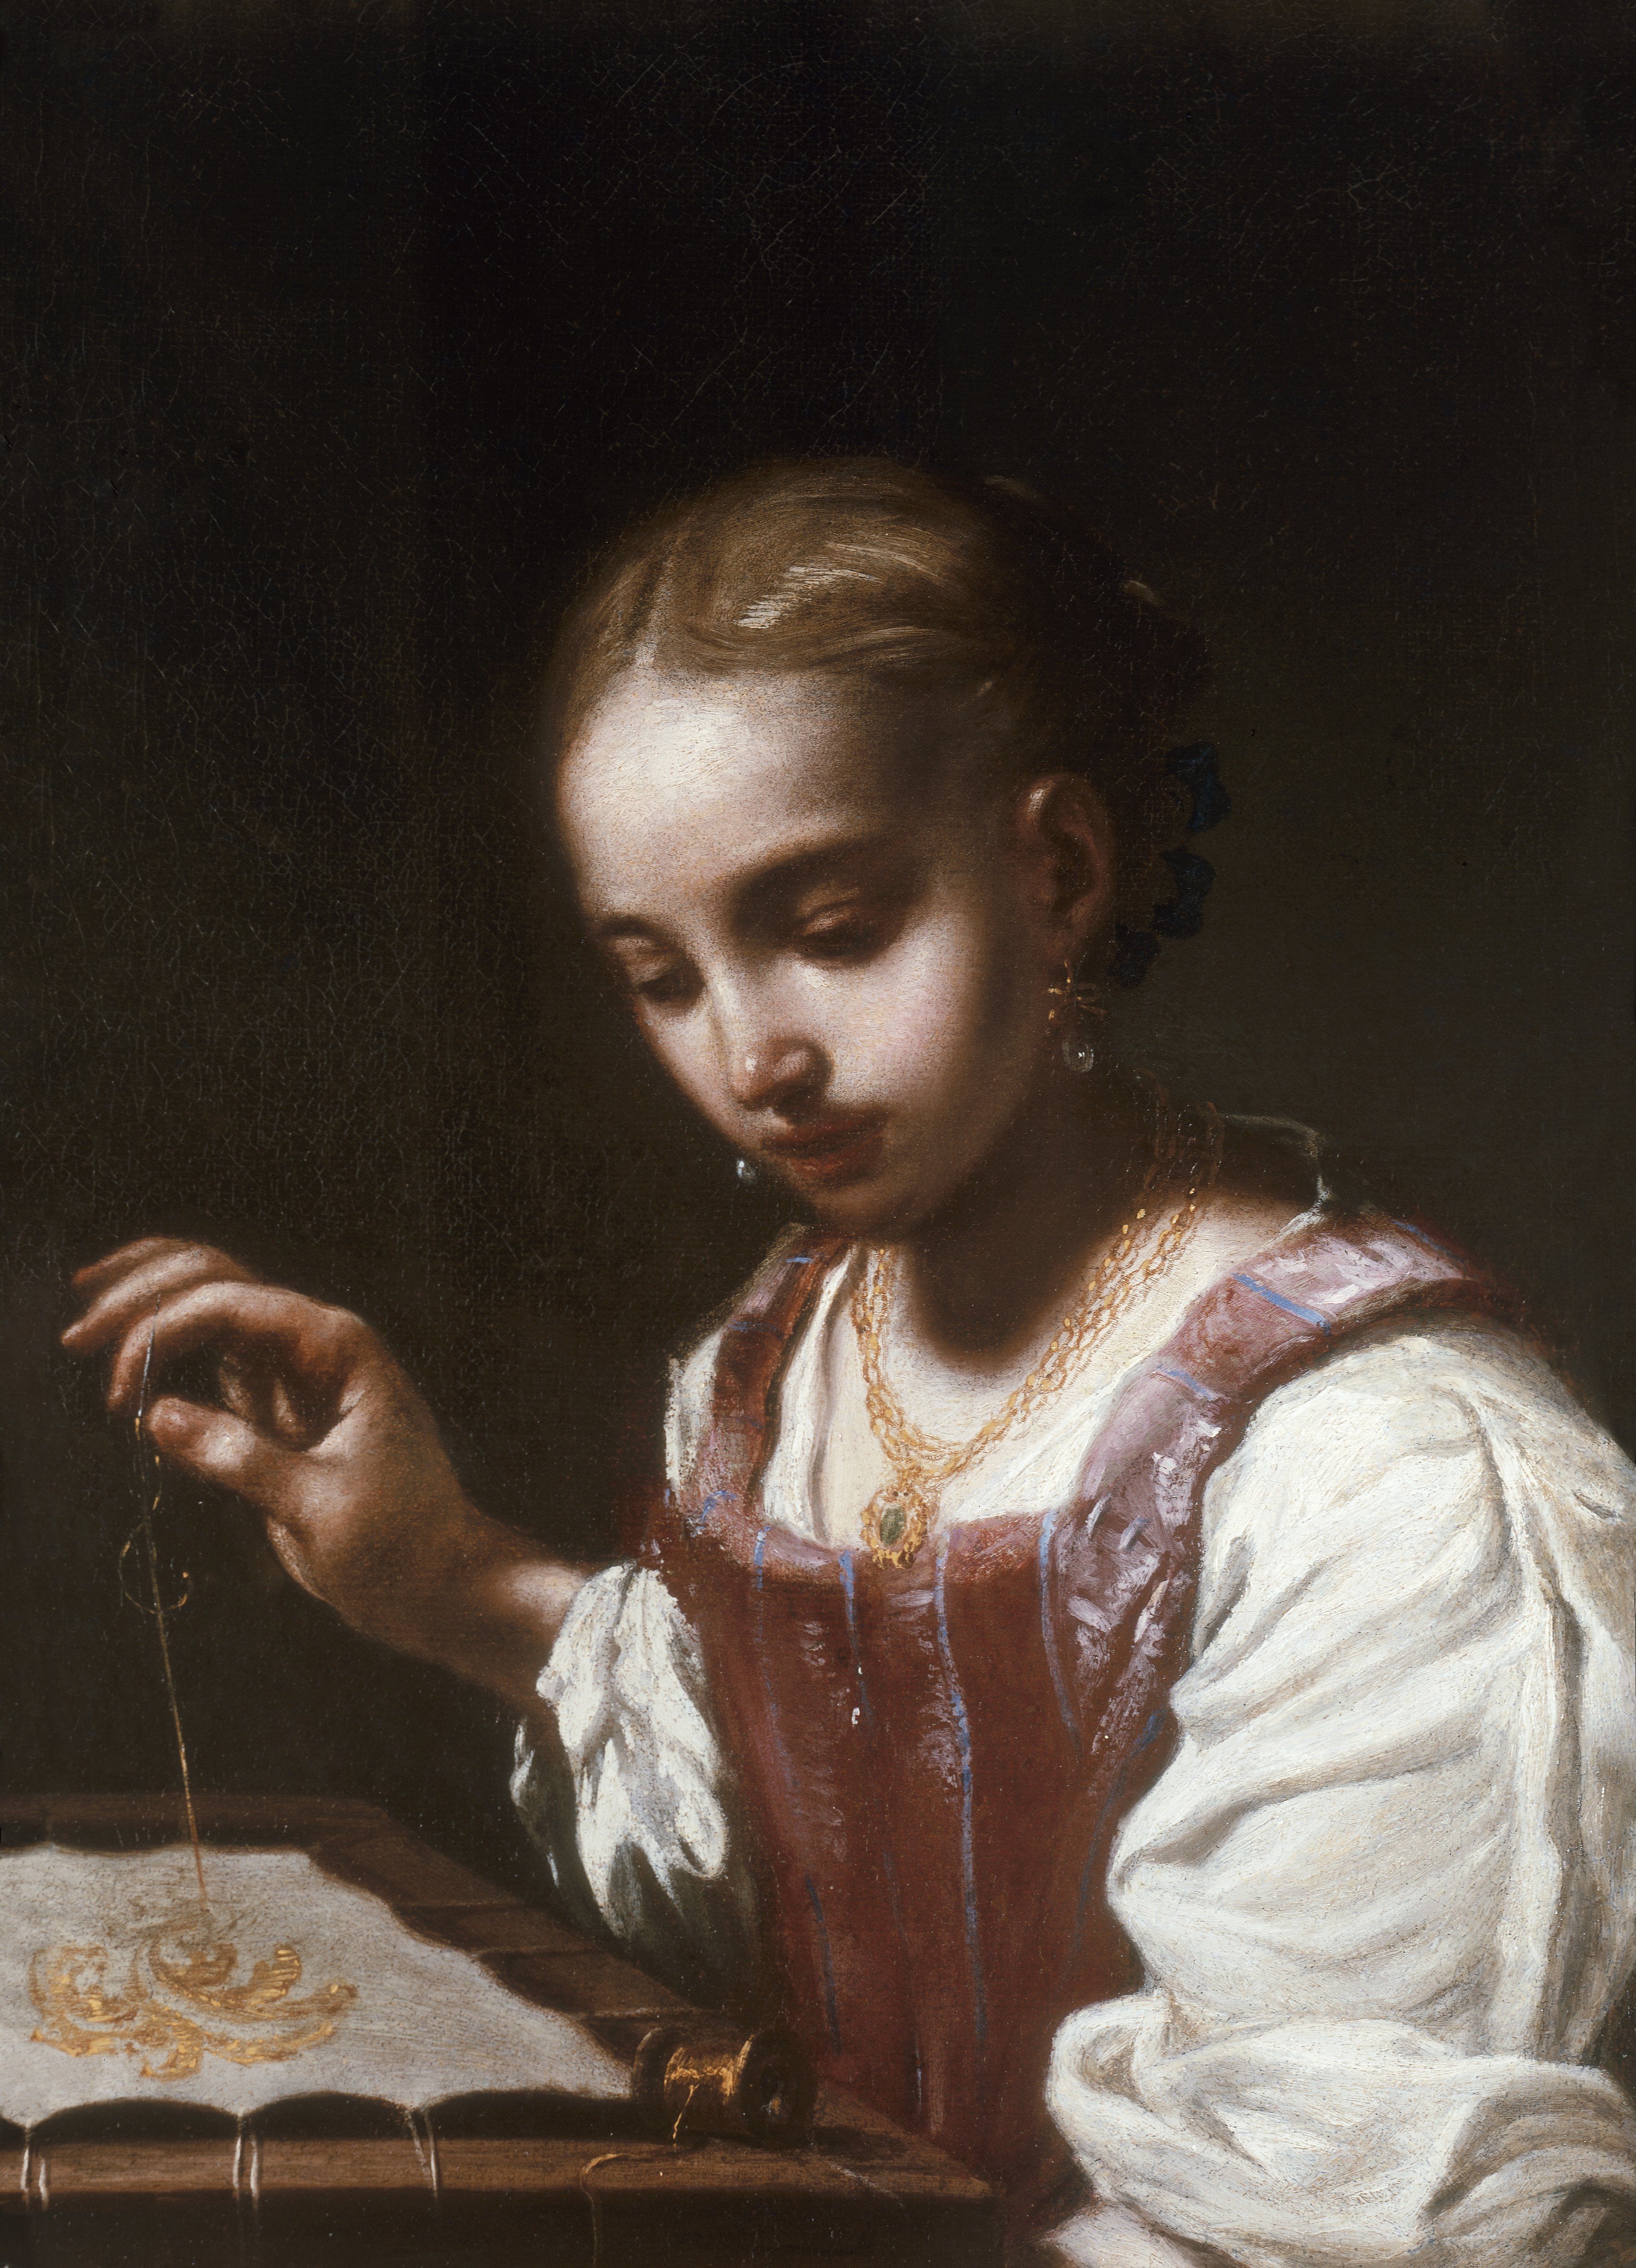 Girl Sewing. Muchacha cosiendo, c. 1720